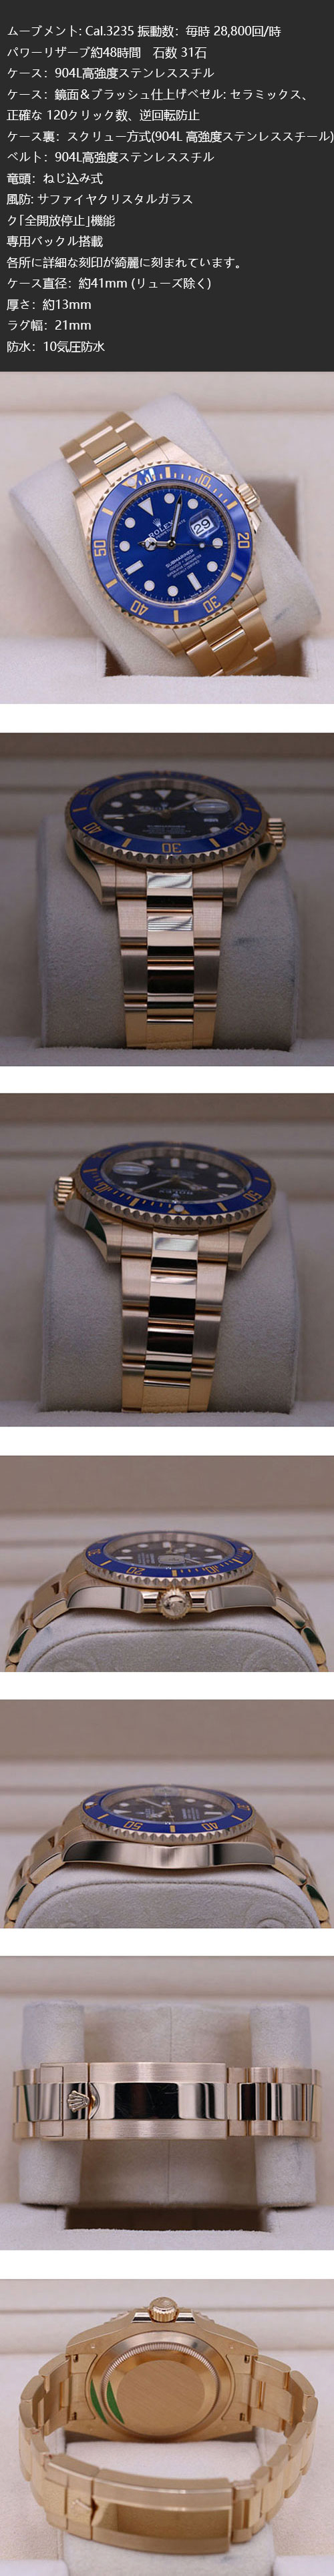 【41mm】ロレックスコピー時計 サブマリーナー デイト 126618LB  時計の紹介【安心と信頼の通販】